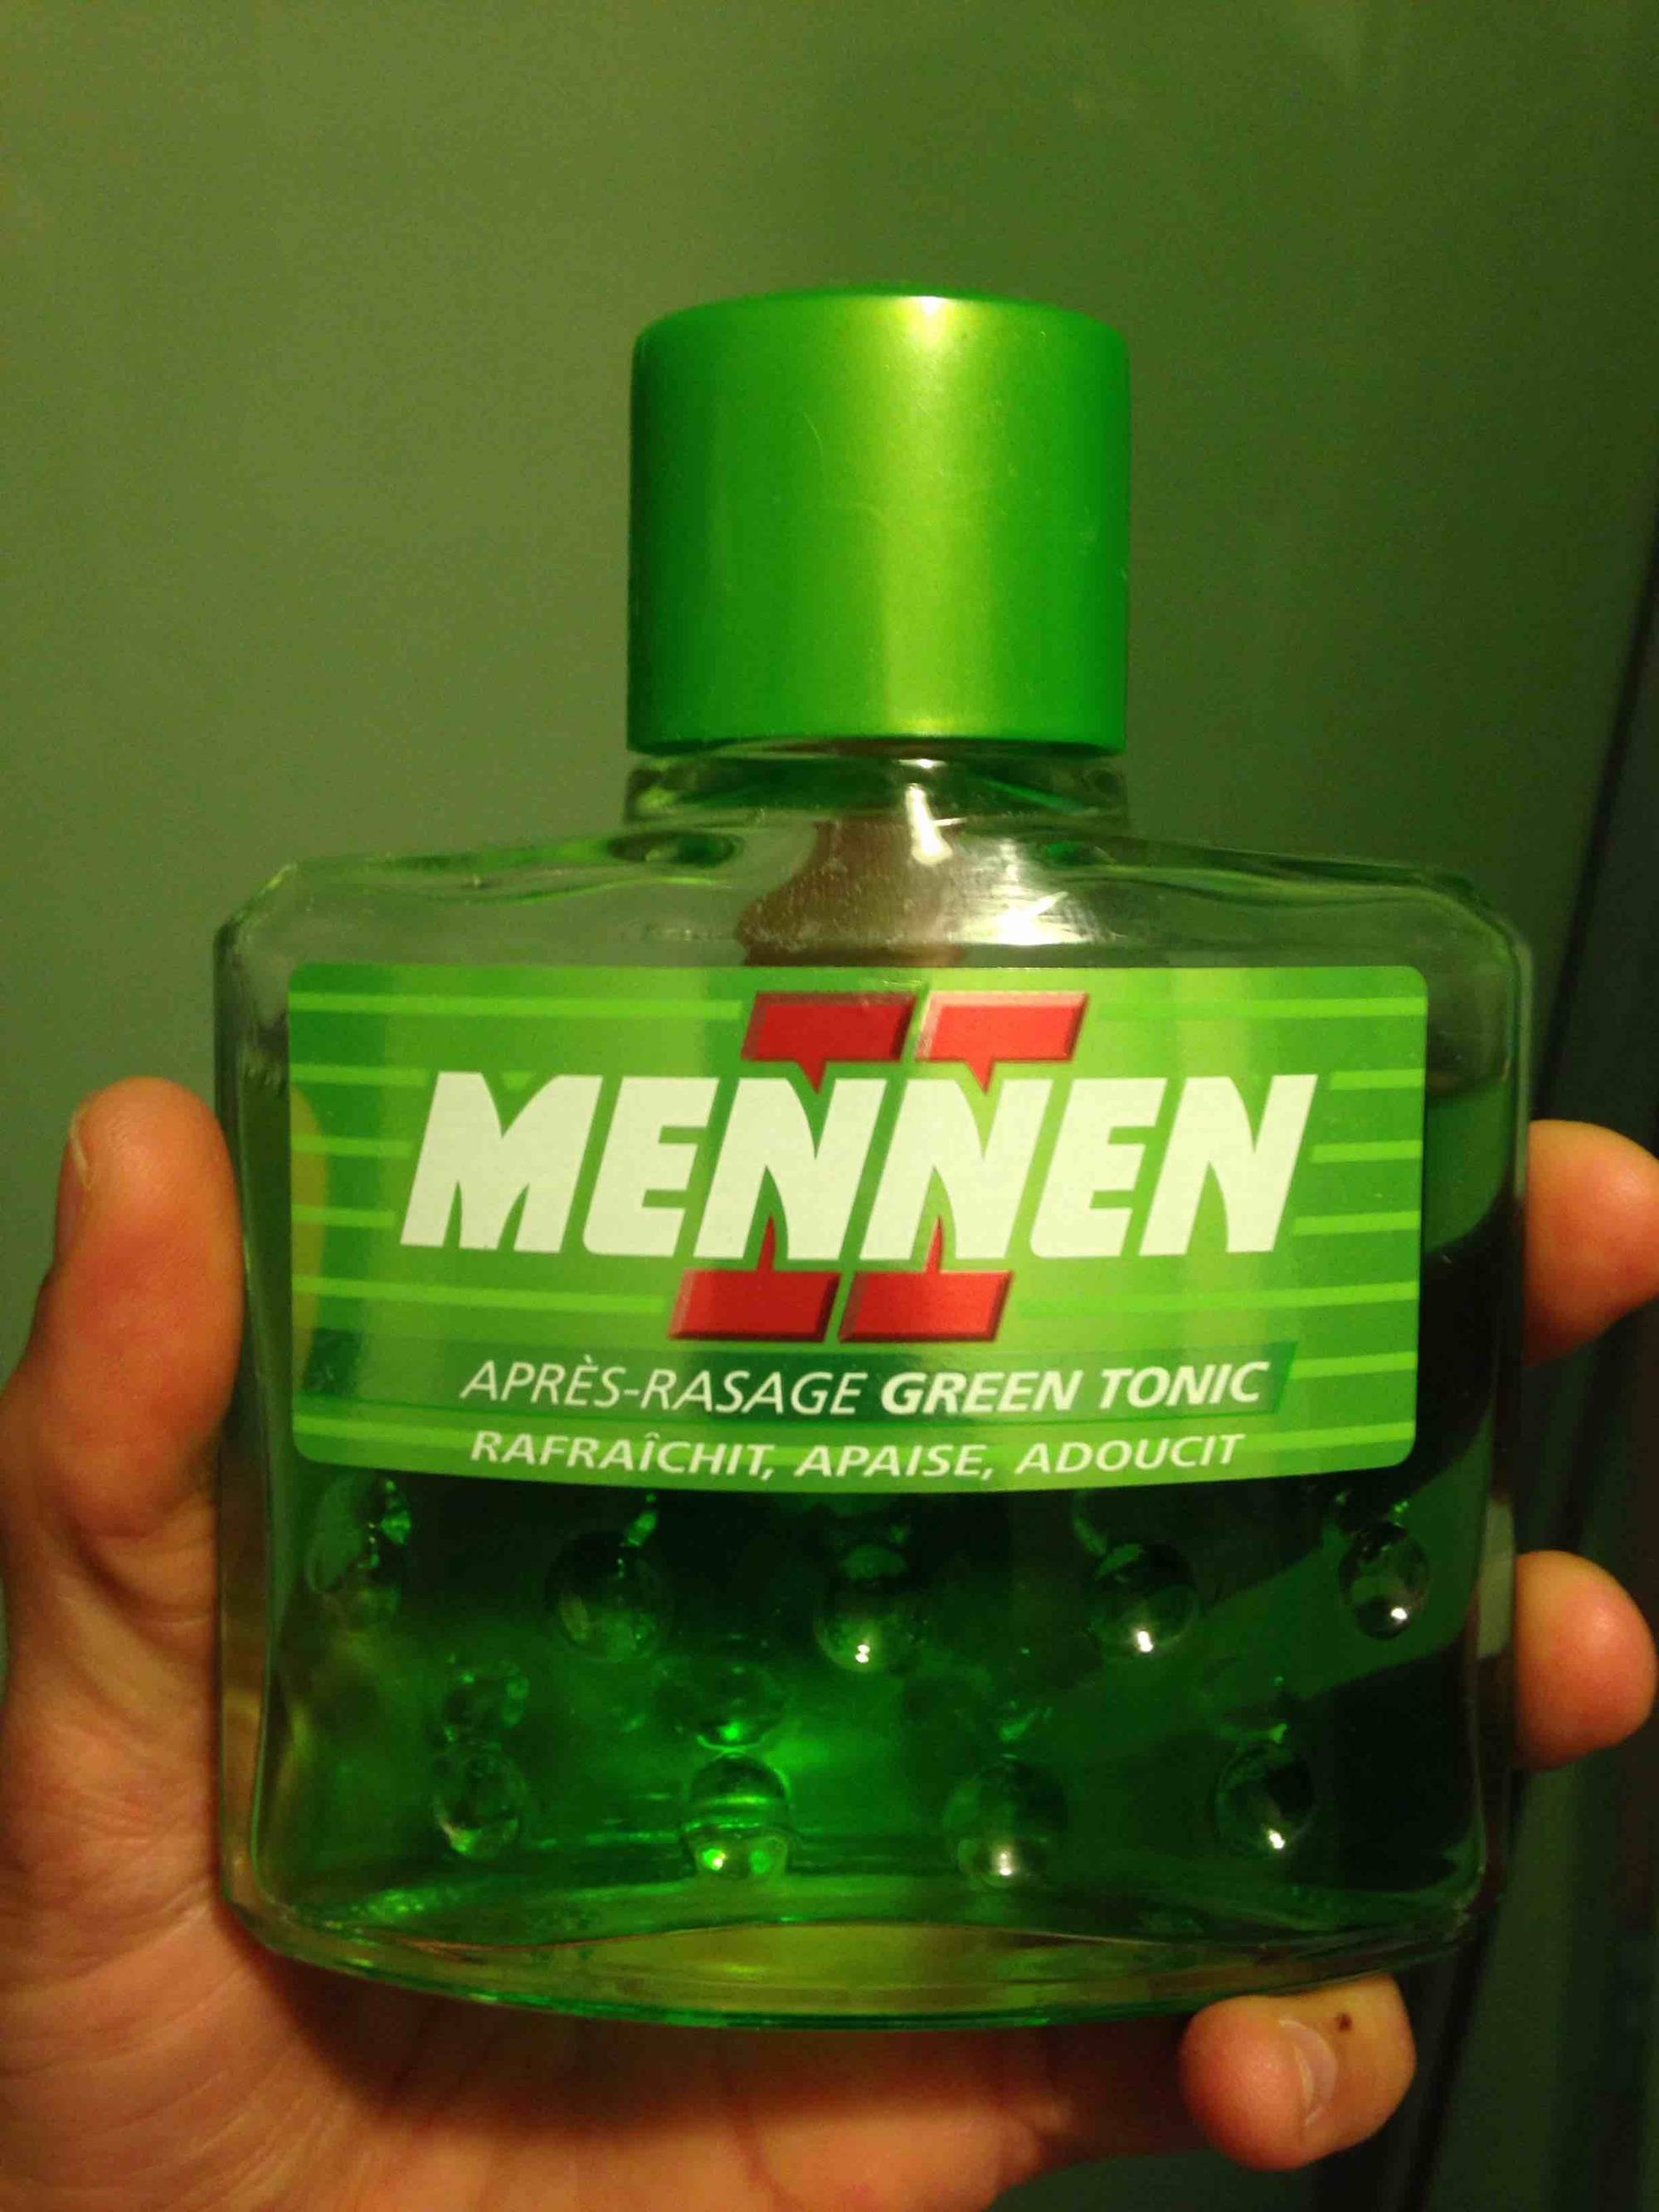 MENNEN - Après-rasage green tonic